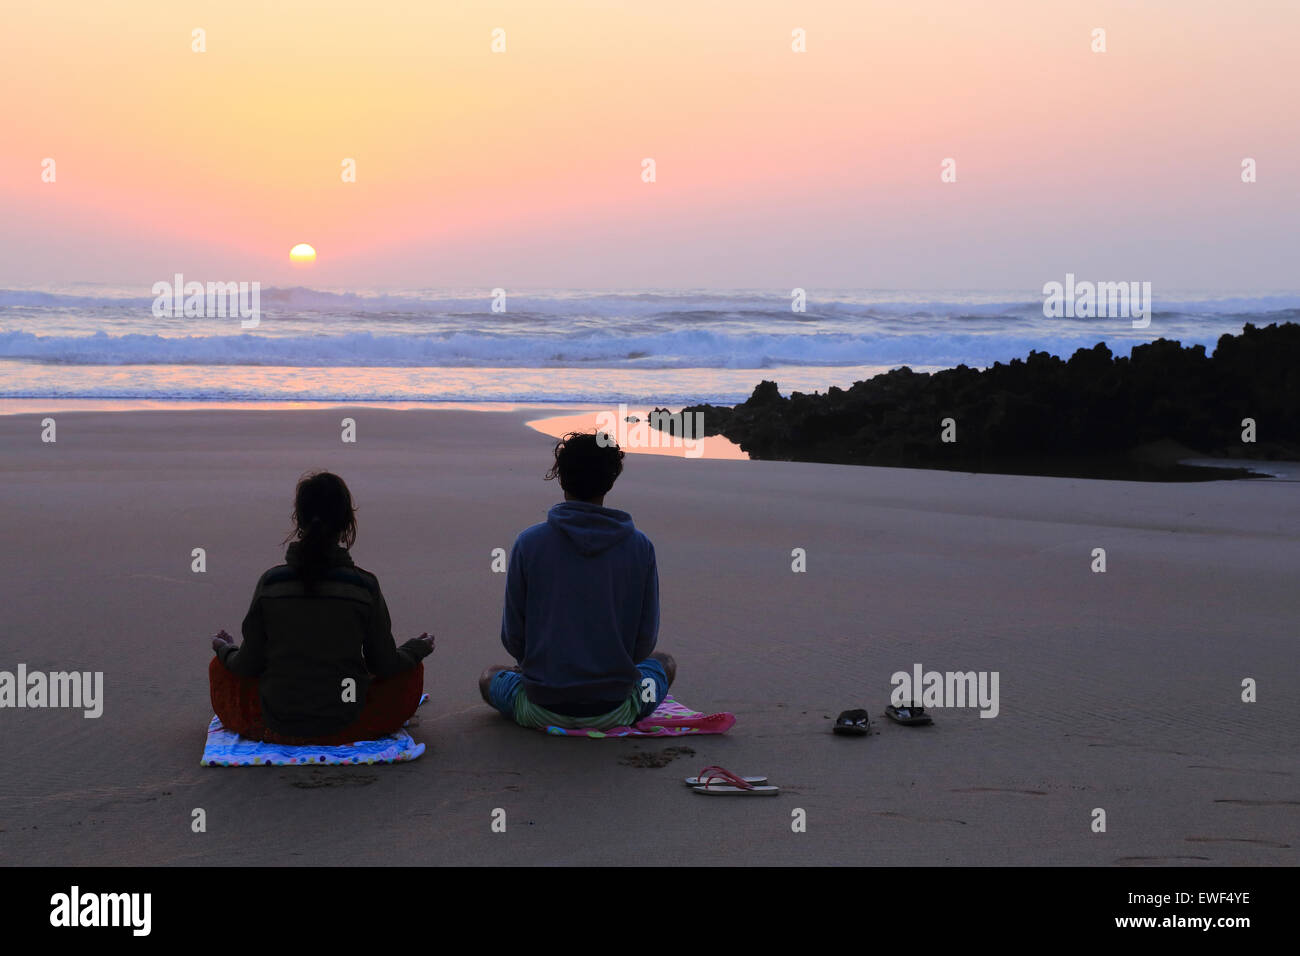 Hommes et une femme sur la plage au coucher du soleil, l'Amaro Costa Vicentina, Portugal Banque D'Images